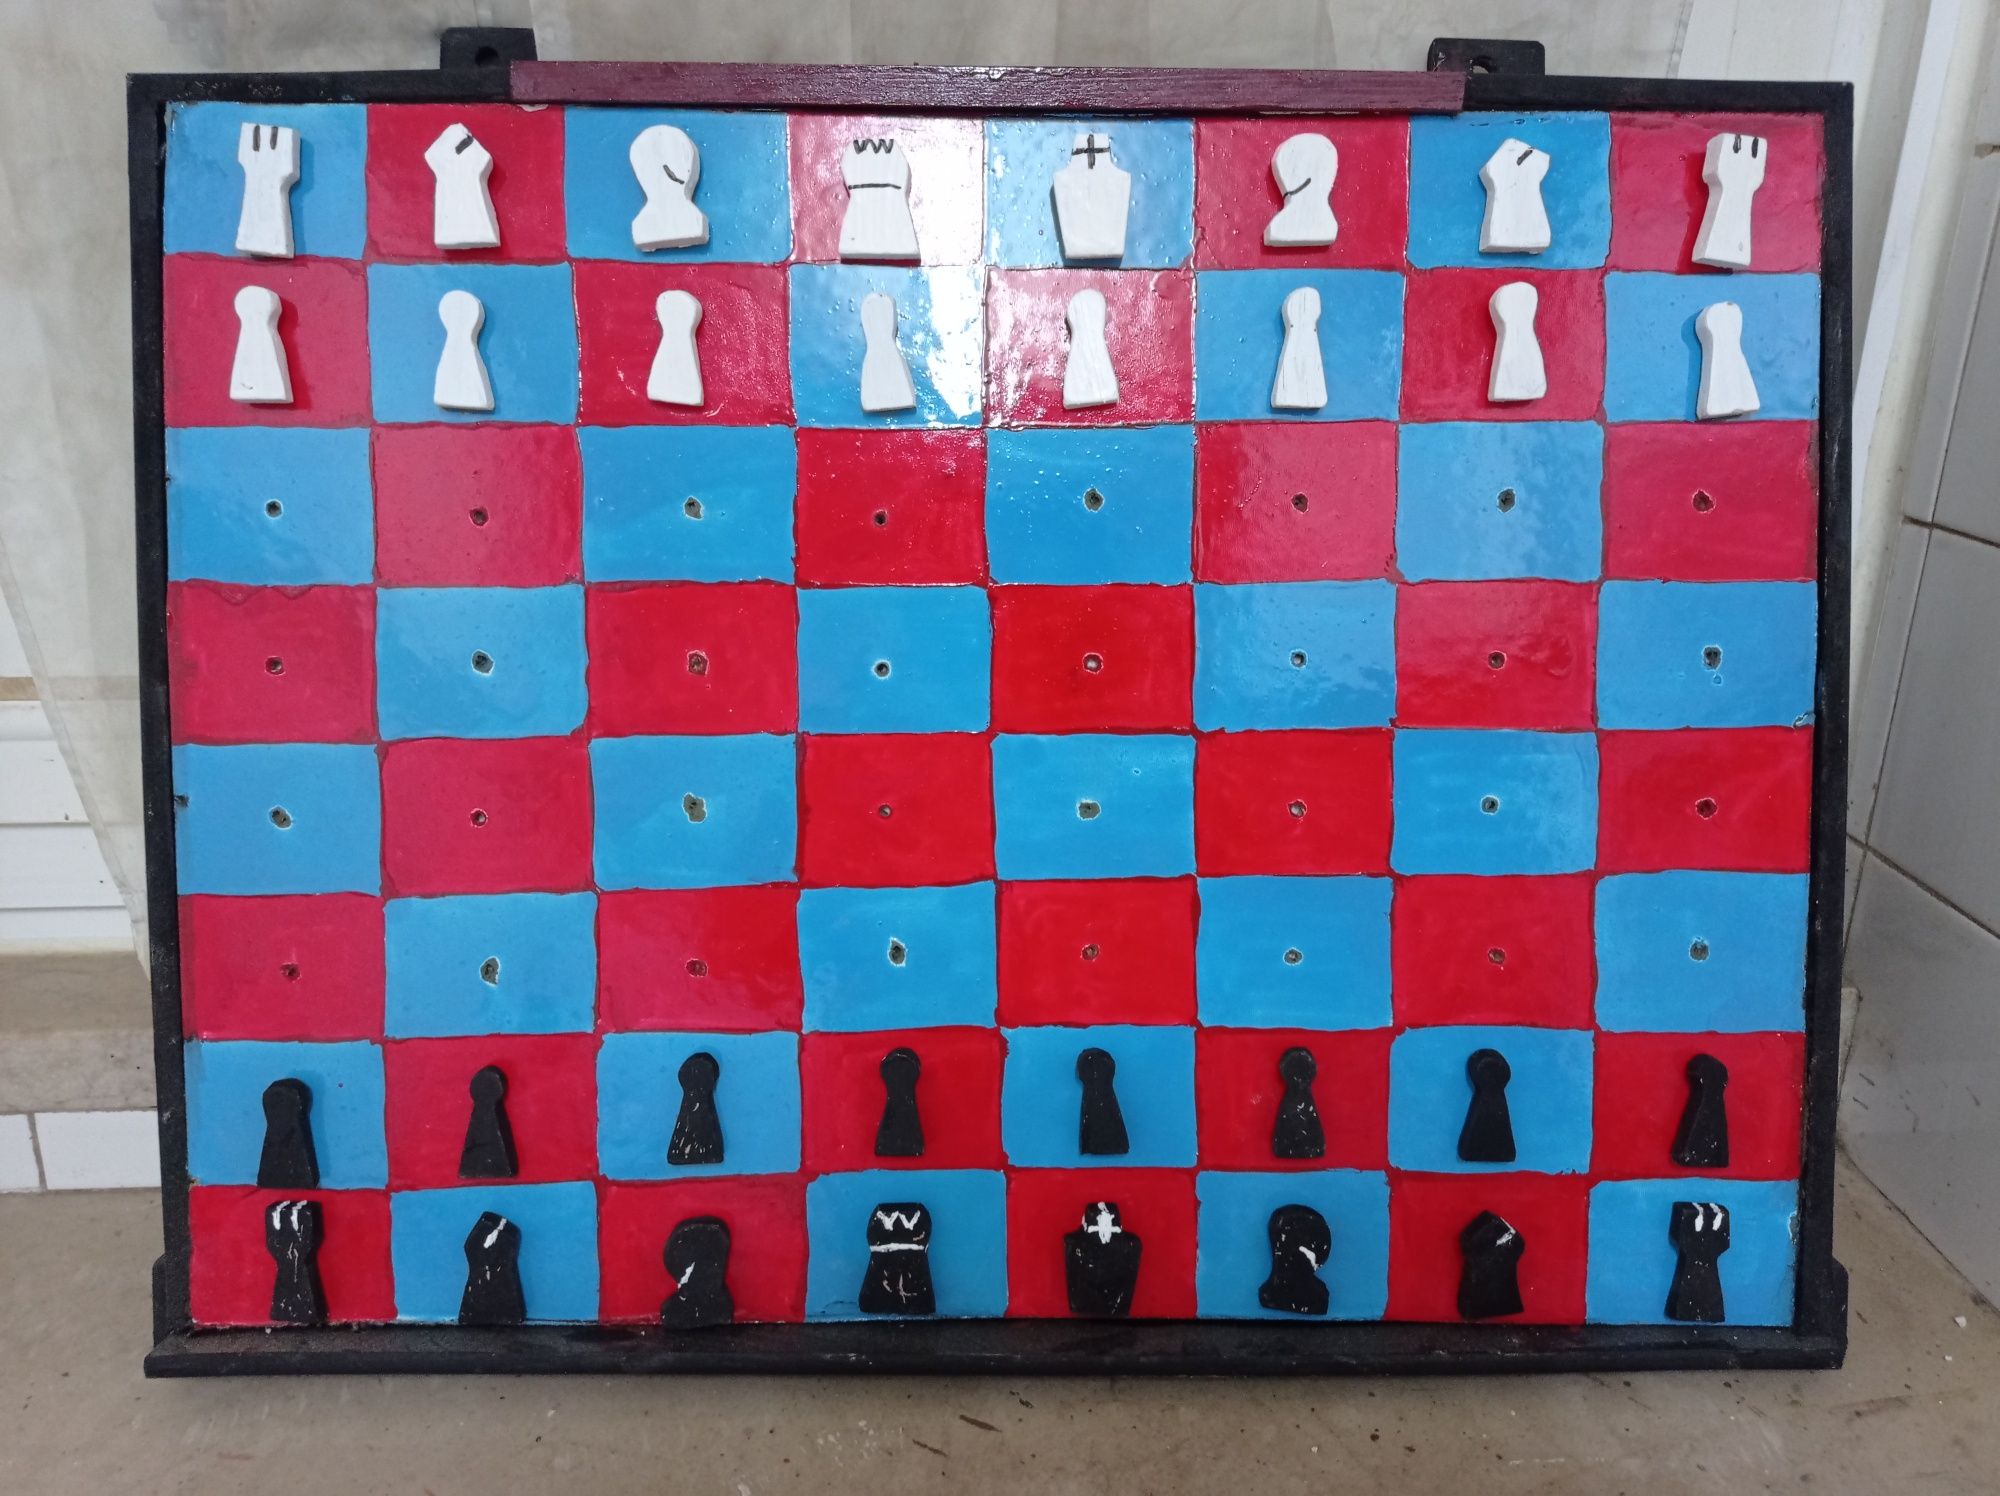 Jogos de xadrez vertical